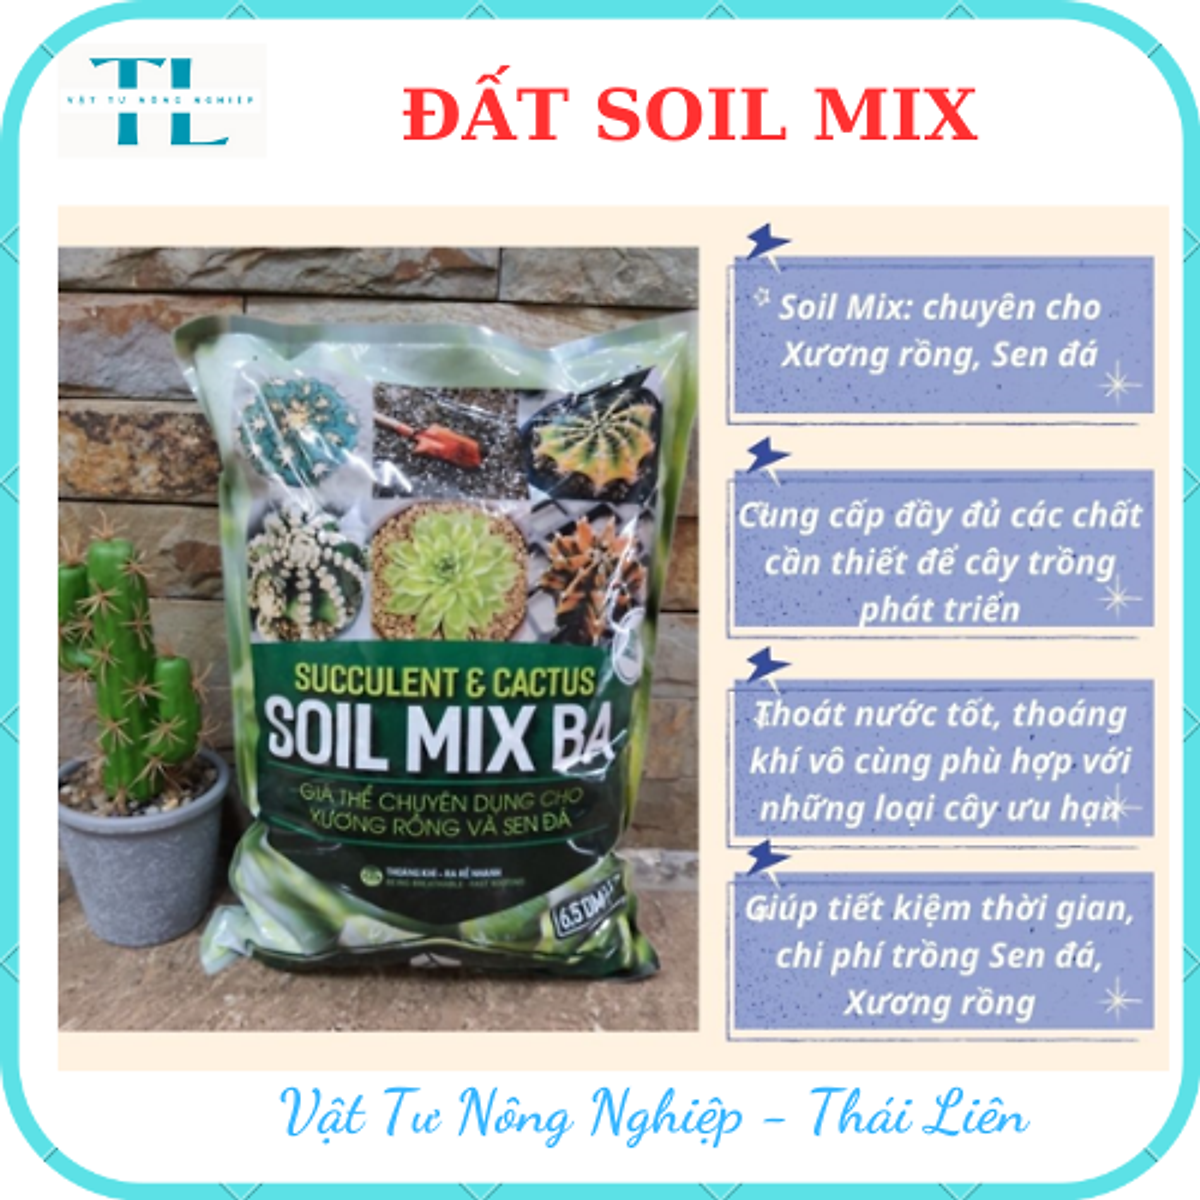 Đất Soil Mix chuyên trồng sen đá xương rồng kích rễ tăng trưởng ...